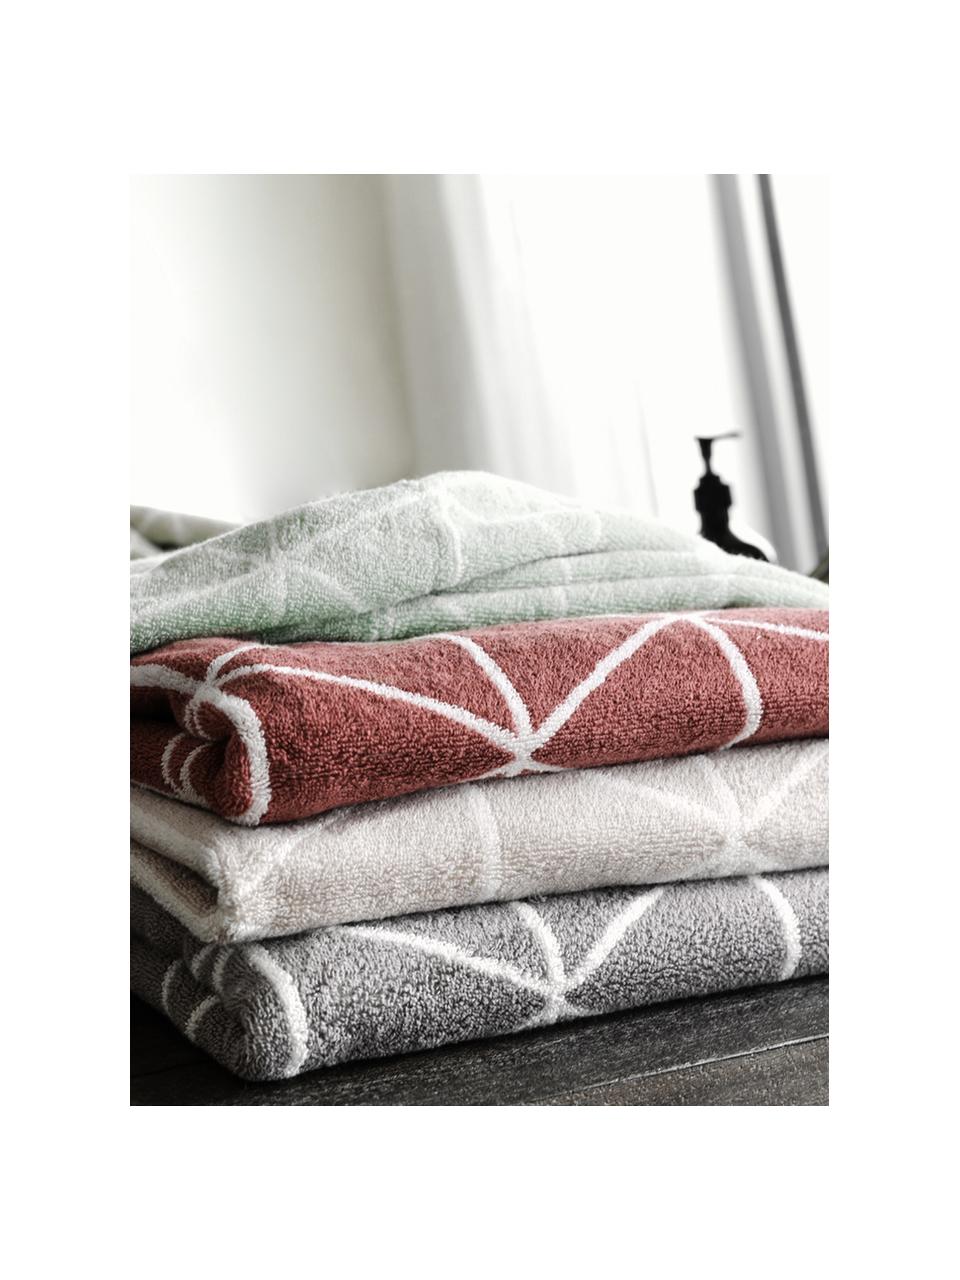 Set de toallas estampadas doble cara Elina, 3 uds., Verde menta, blanco crema, Set de diferentes tamaños